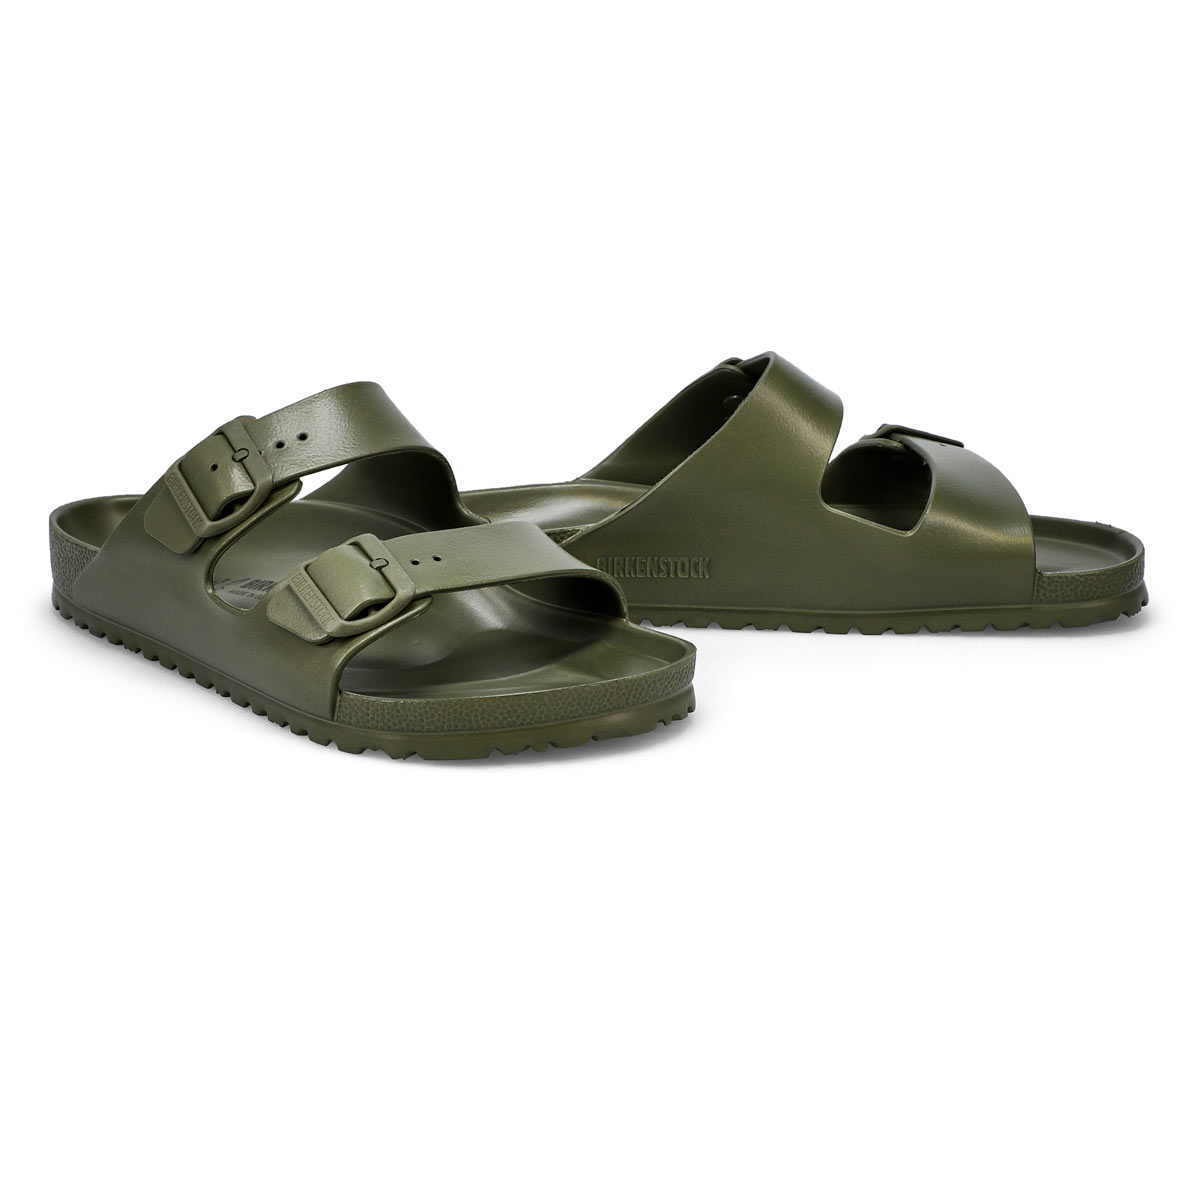 Mens' Arizona EVA Sandals - Green